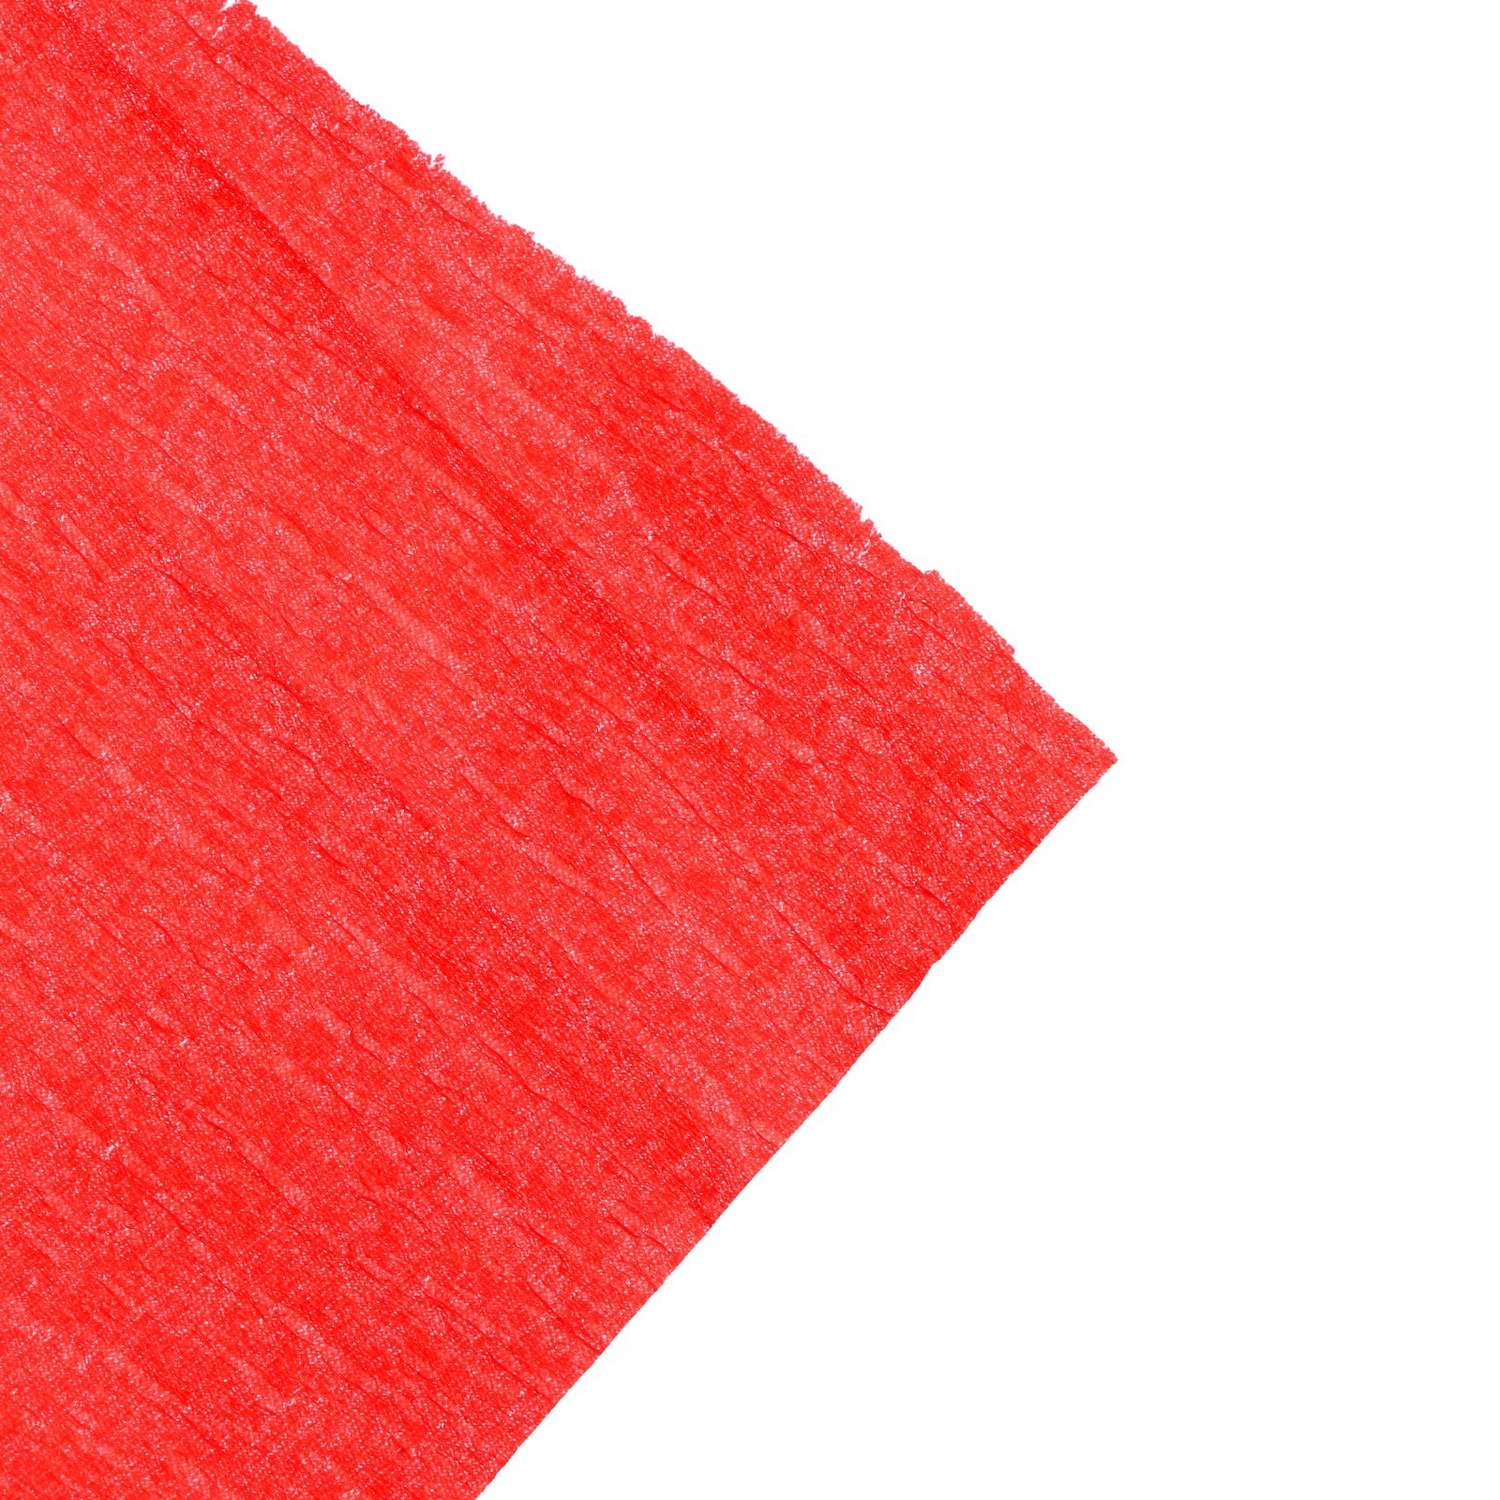 Набор цветного фетра Calligrata бумаги крепированной в рулоне 10 штук/10 цветов 50 х 200 см 30 г/м2 - фото 4